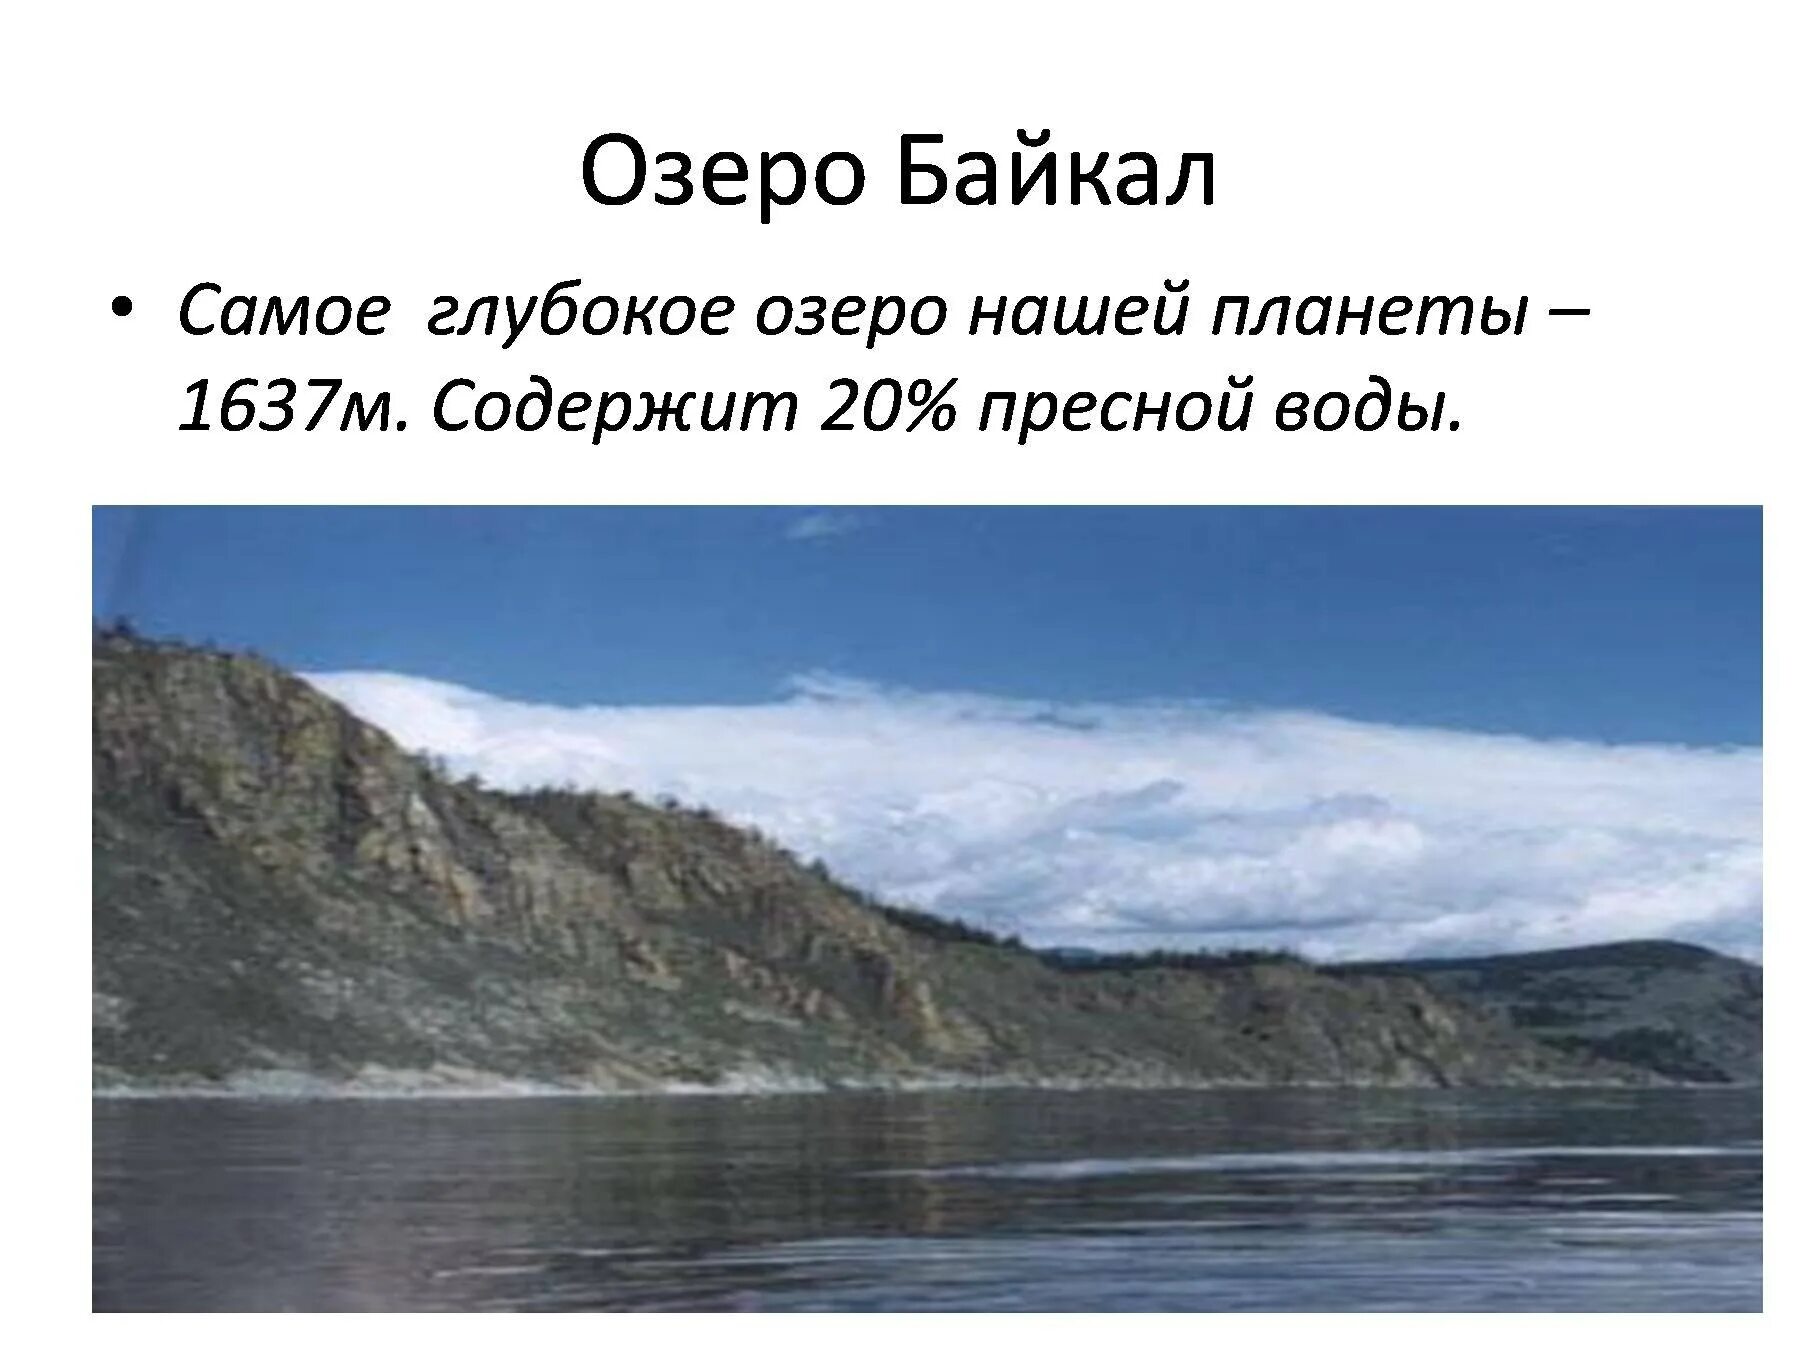 В россии самое глубокое озеро на земле. Самое глубокое озеро нашей планеты. Байкал самое глубокое. Диктант озеро Байкал. Самое глубокое озеро диктант Байкал глубочайшее озеро.